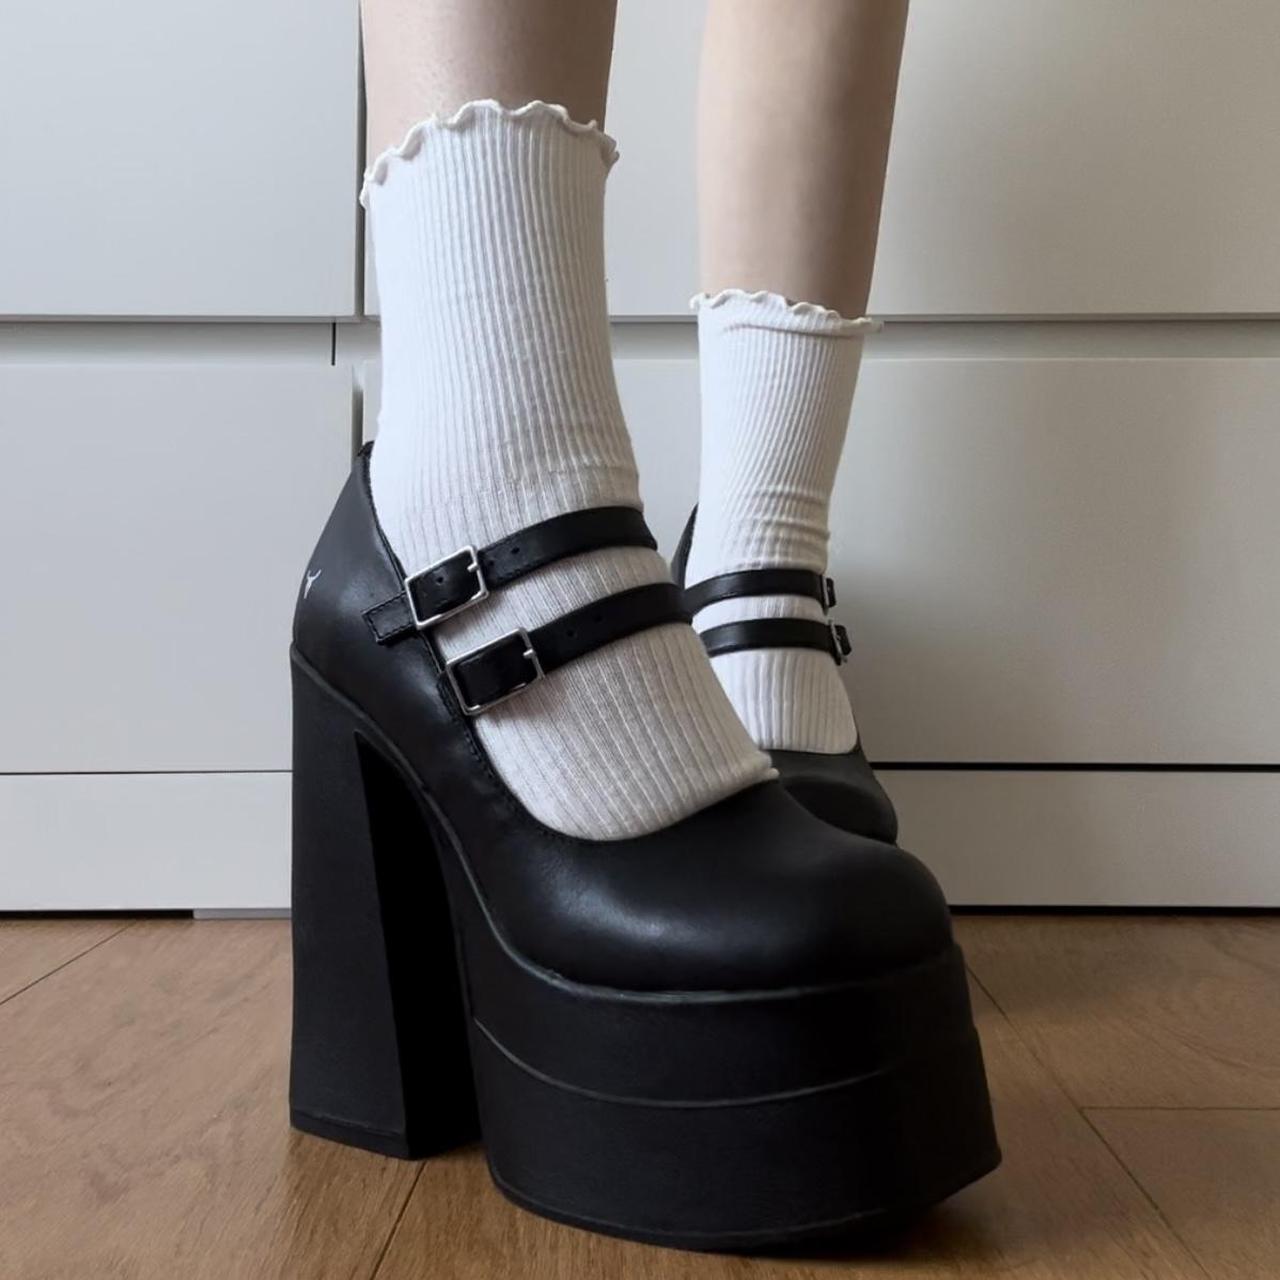 Windsor smith platform heels size AU 6 Never worn... - Depop